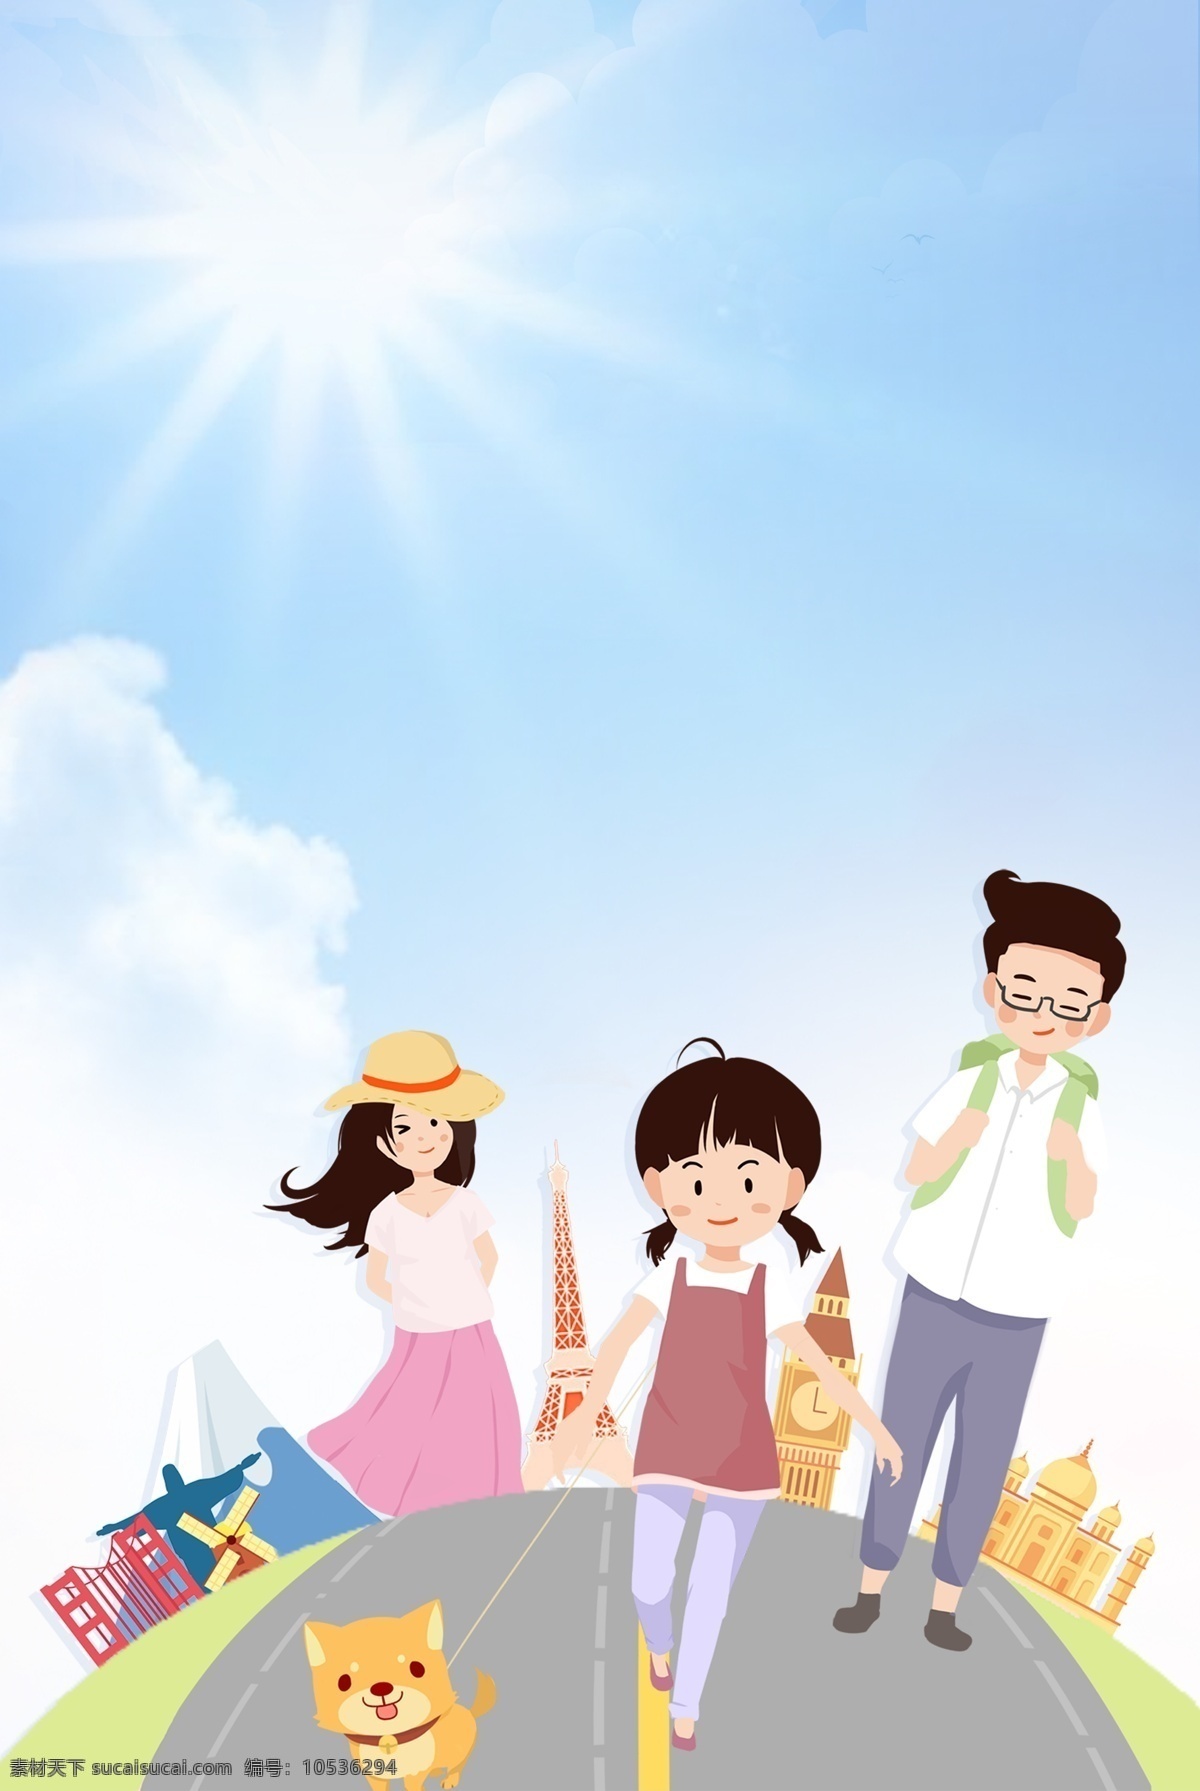 暑期 亲子 旅游 海报 背景 夏季 人物 马路 草丛 清新 简约 蓝天 白云